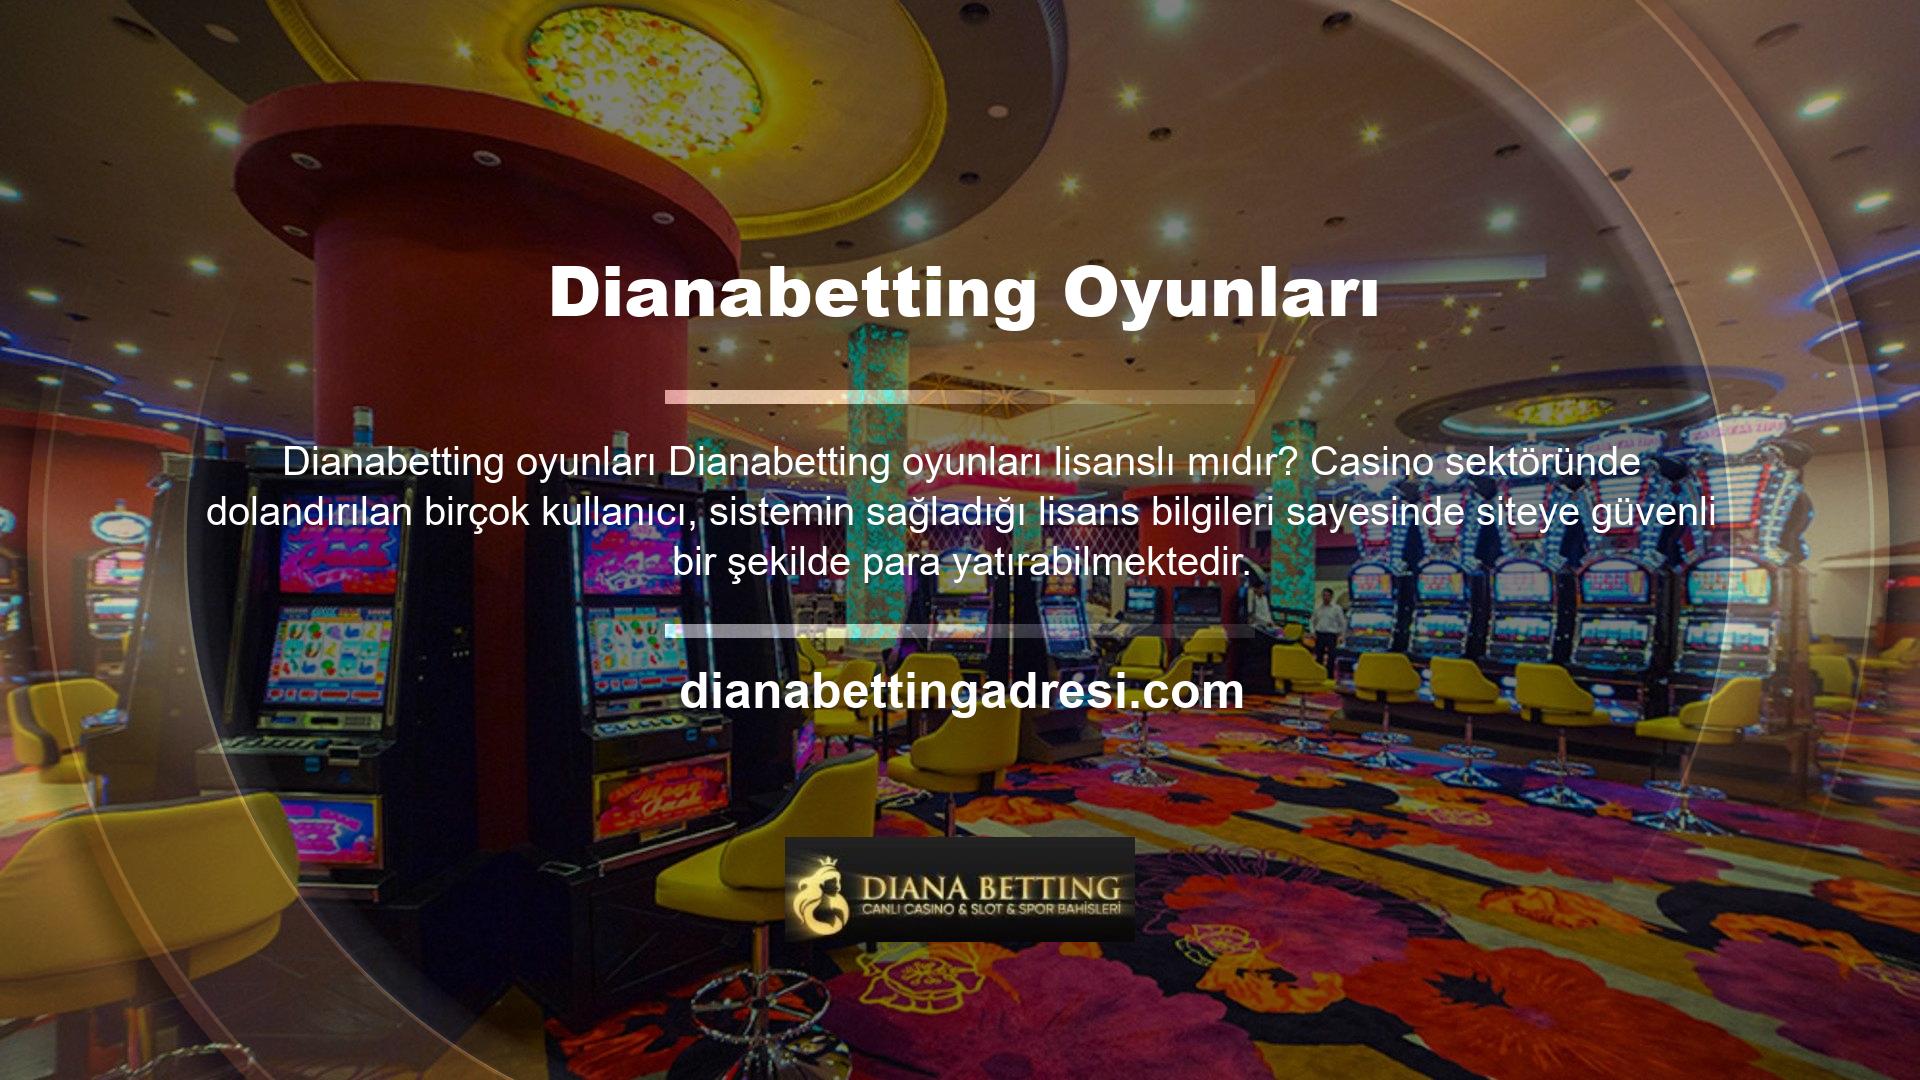 Lisanslı bir site olan Dianabetting, güvenilir bir casino sistemi ile faaliyetlerine devam etmektedir